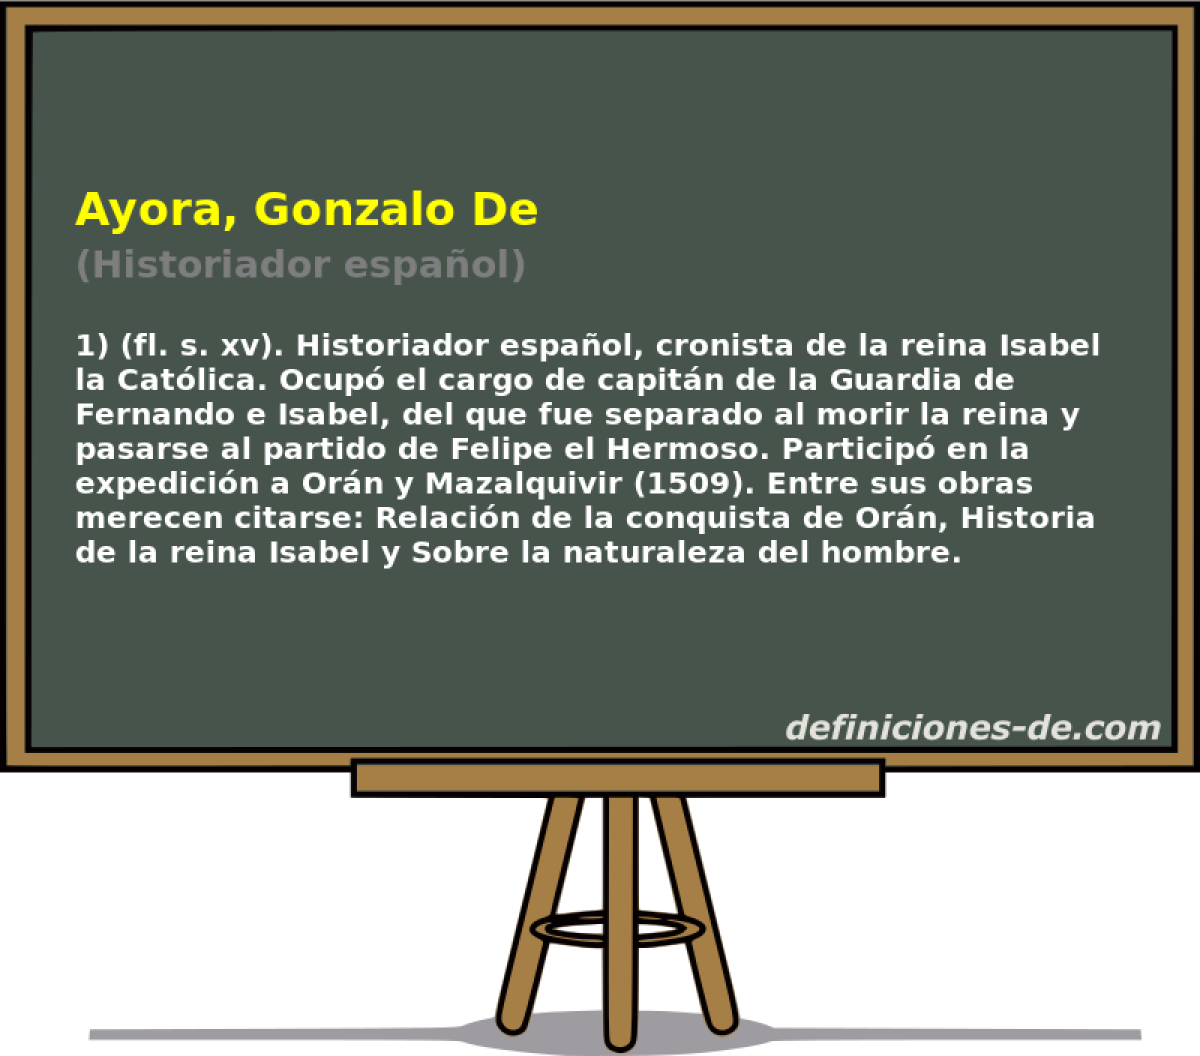 Ayora, Gonzalo De (Historiador espaol)